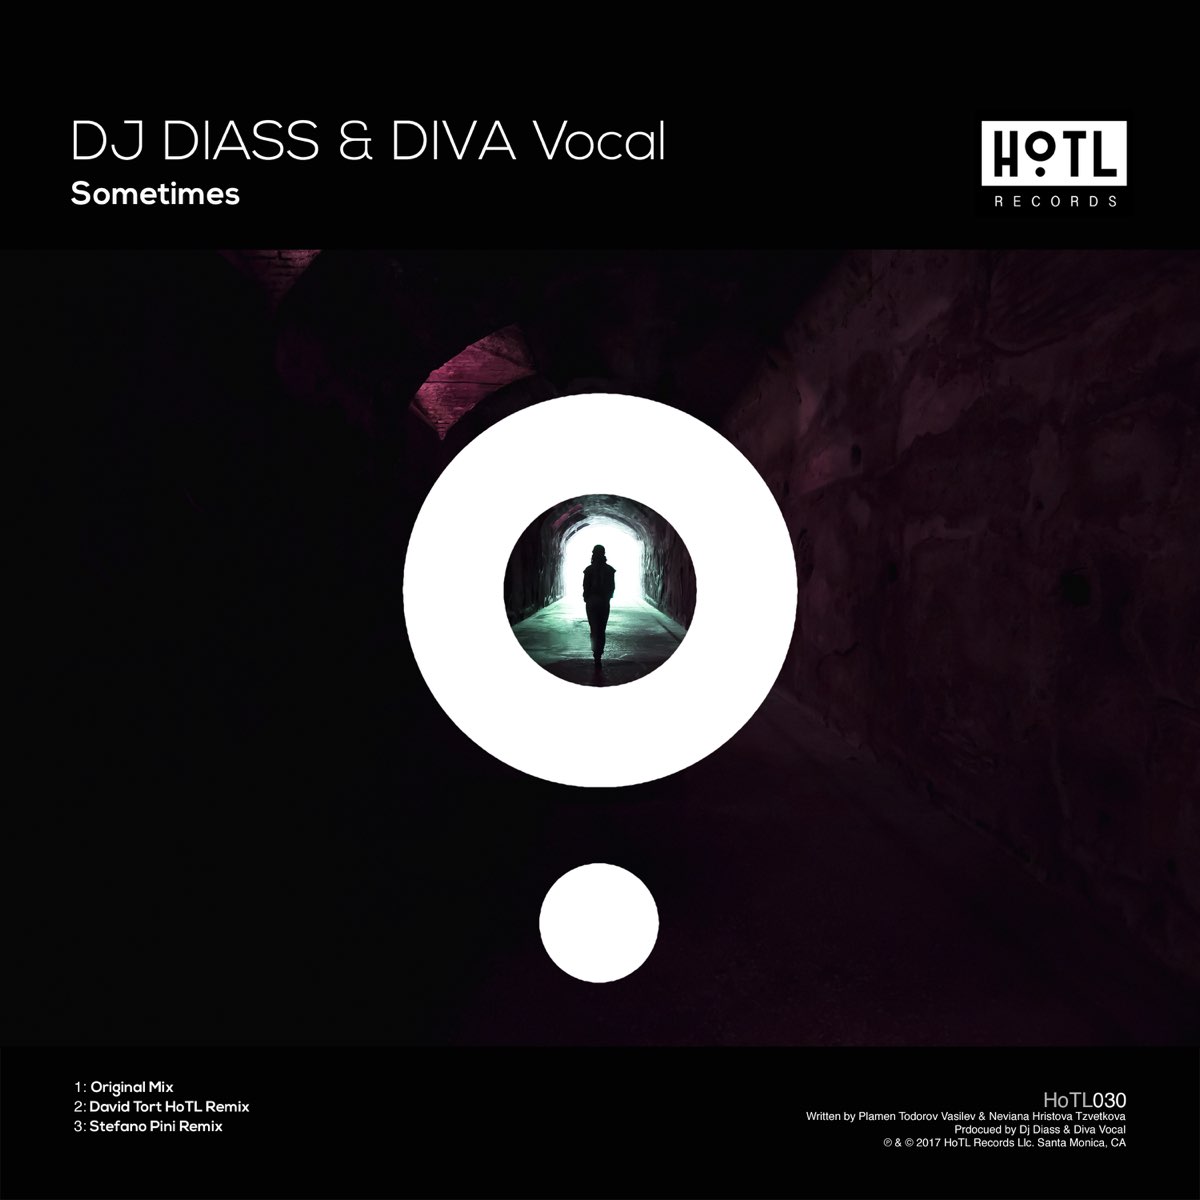 Диасс. Diva Vocal. Diass. DJ Diass give it all to you Original Mix. Teklix Mantric Fusion (Original Mix) обложка.